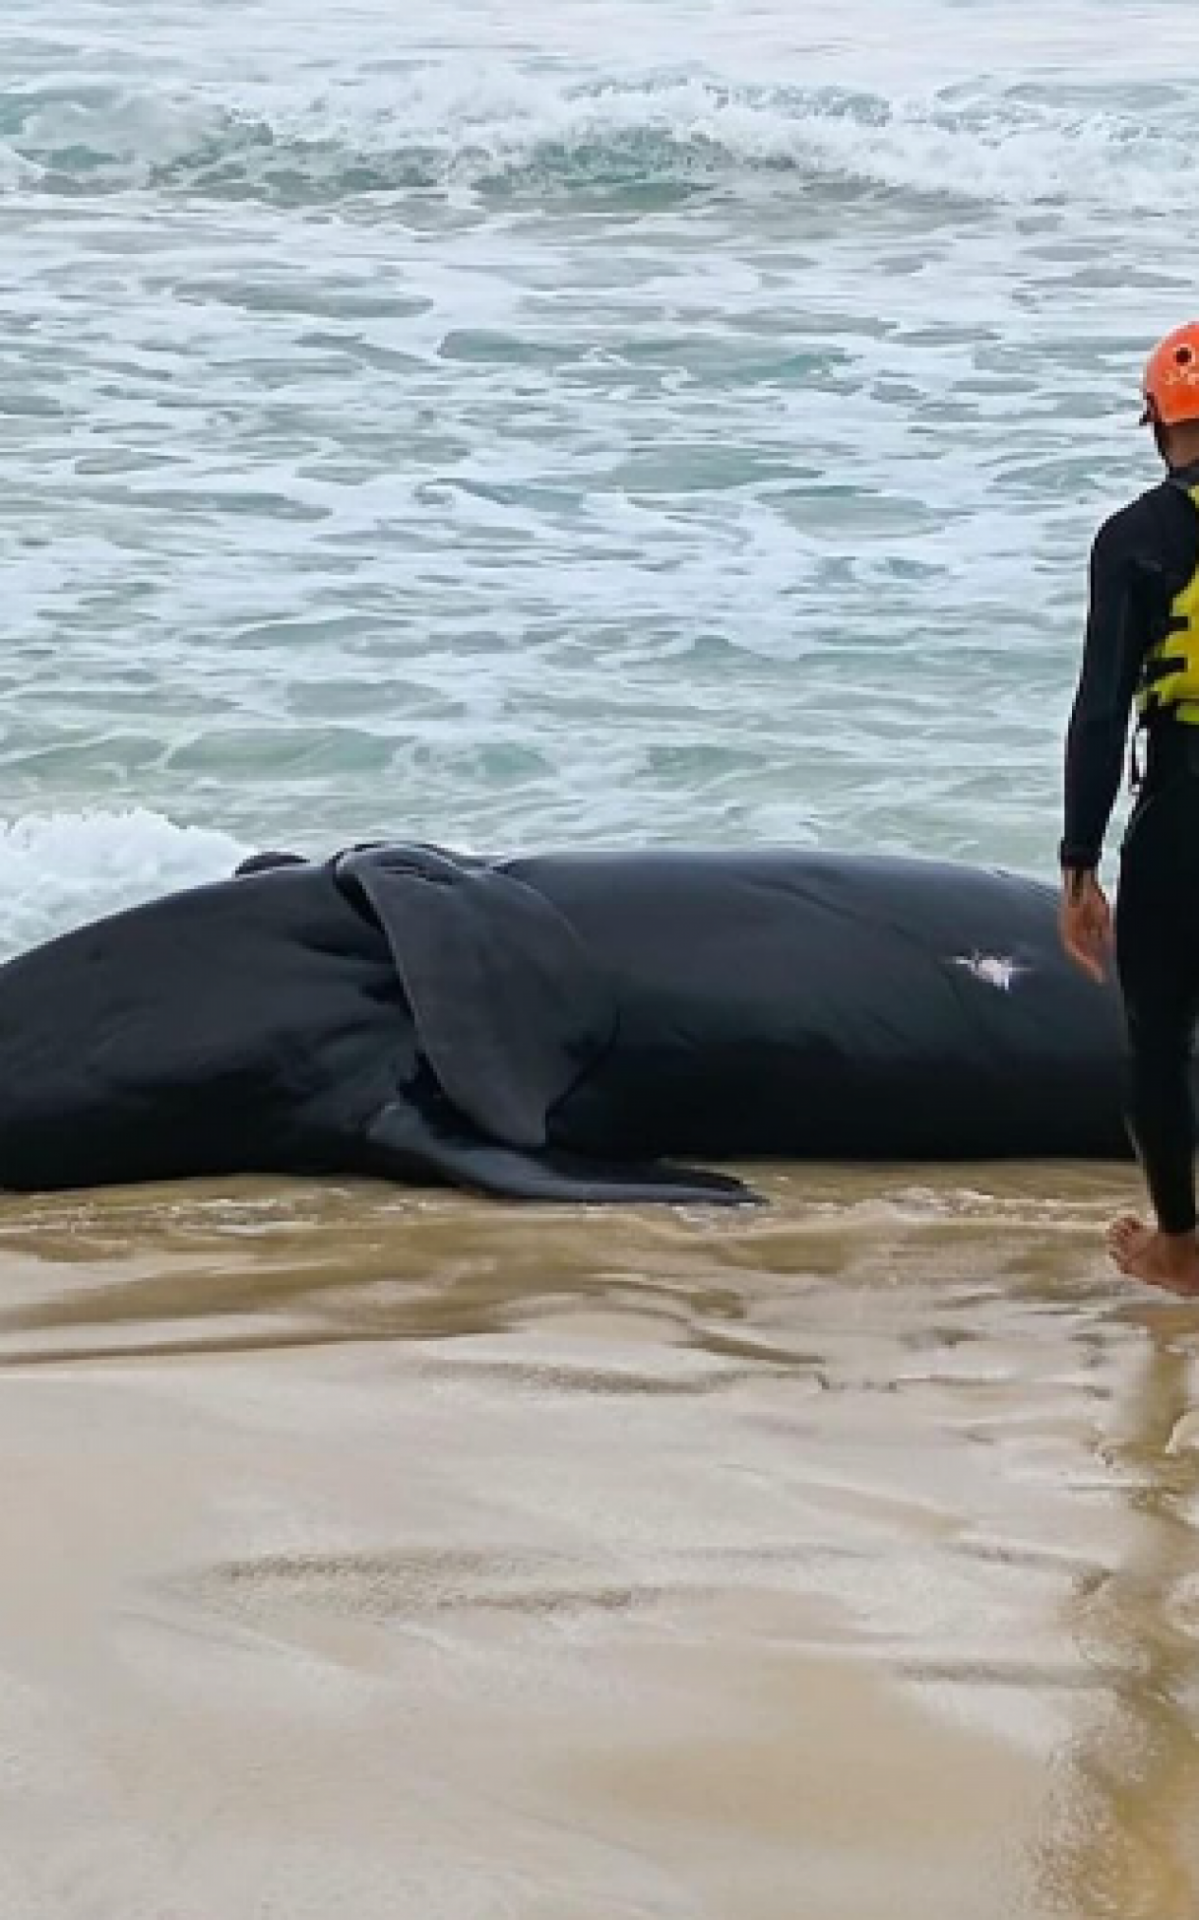 Filhote de baleia morre encalhada em praia de Saquarema | Saquarema